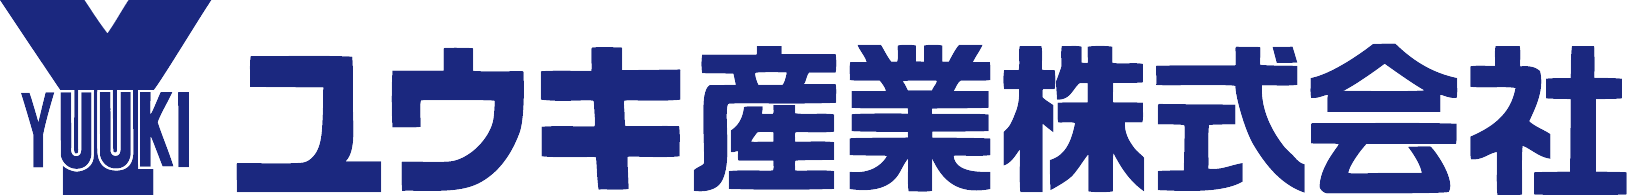 ユウキ産業 logo